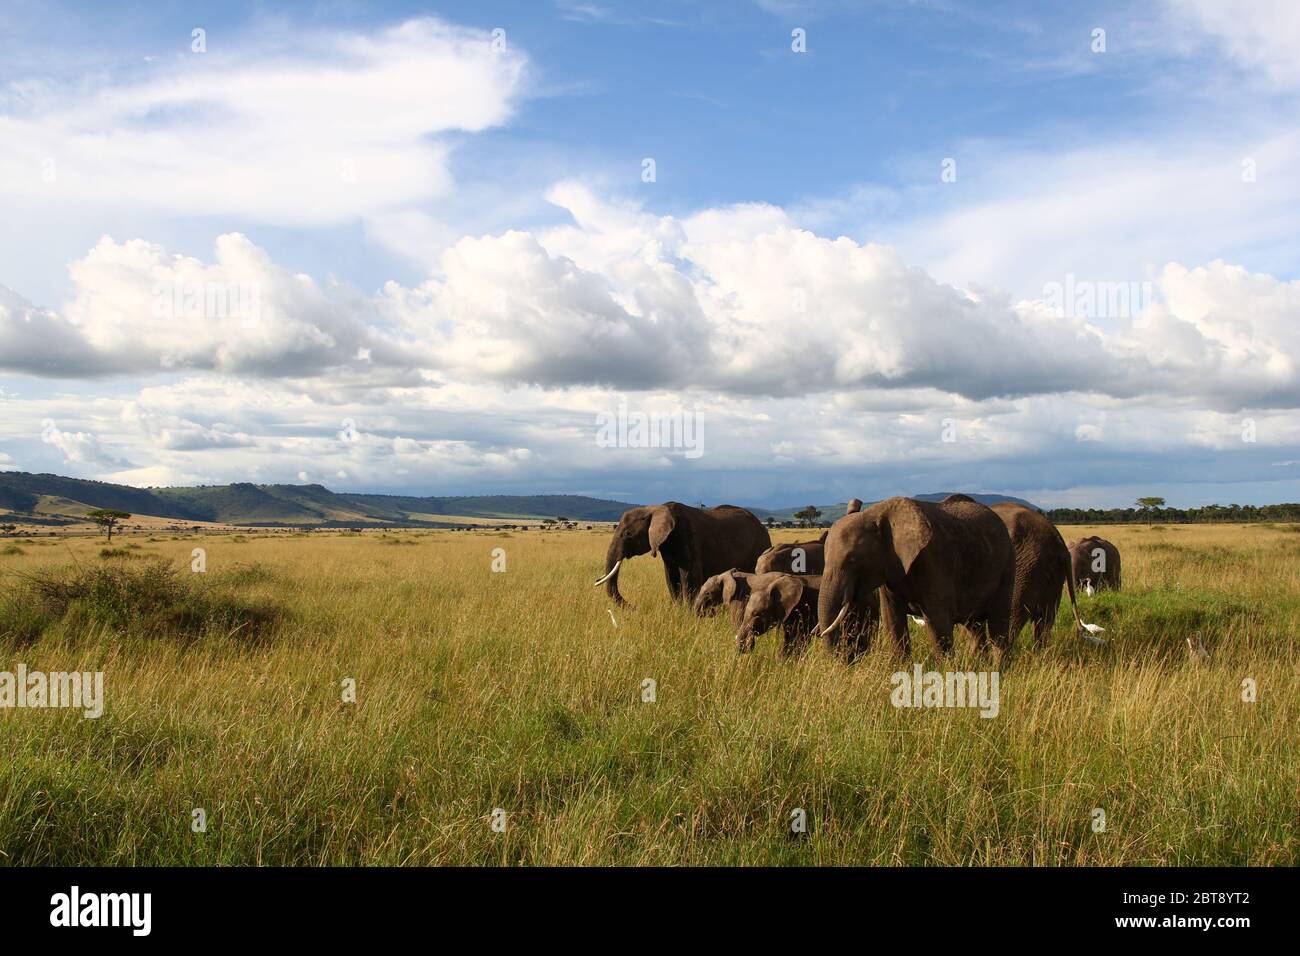 Un troupeau d'éléphants s'élance dans la savane kenyane avec des nuages imposants dans le ciel, le soir au soleil Banque D'Images